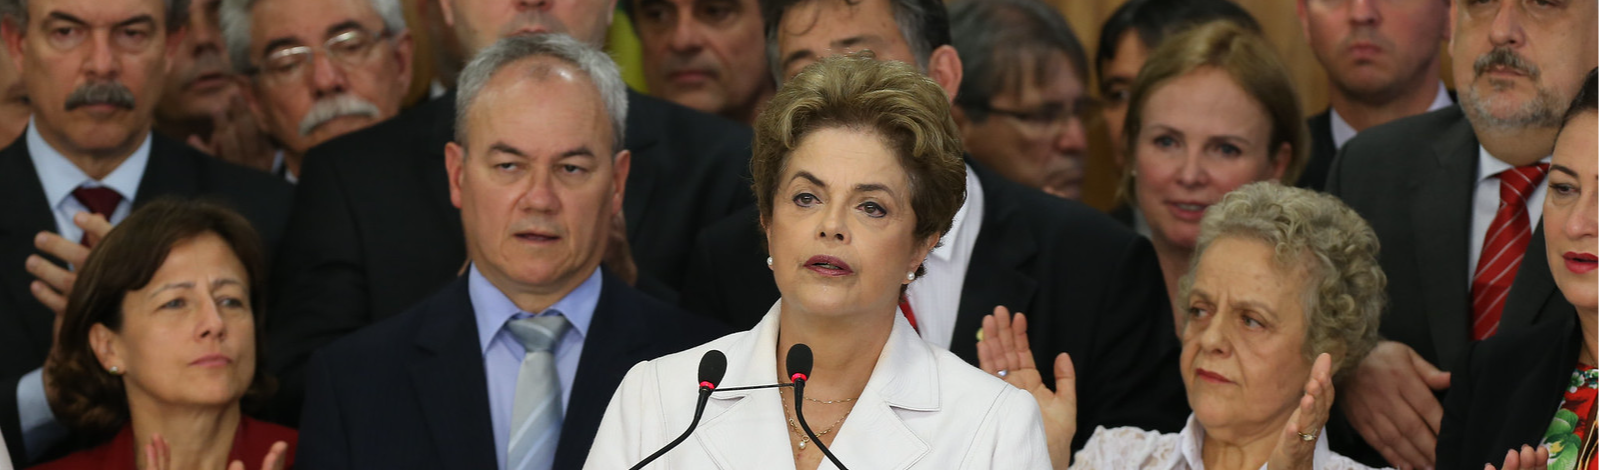 Brasil segue vulnerável à guerra híbrida mesmo após golpes e Lava Jato, dizem analistas